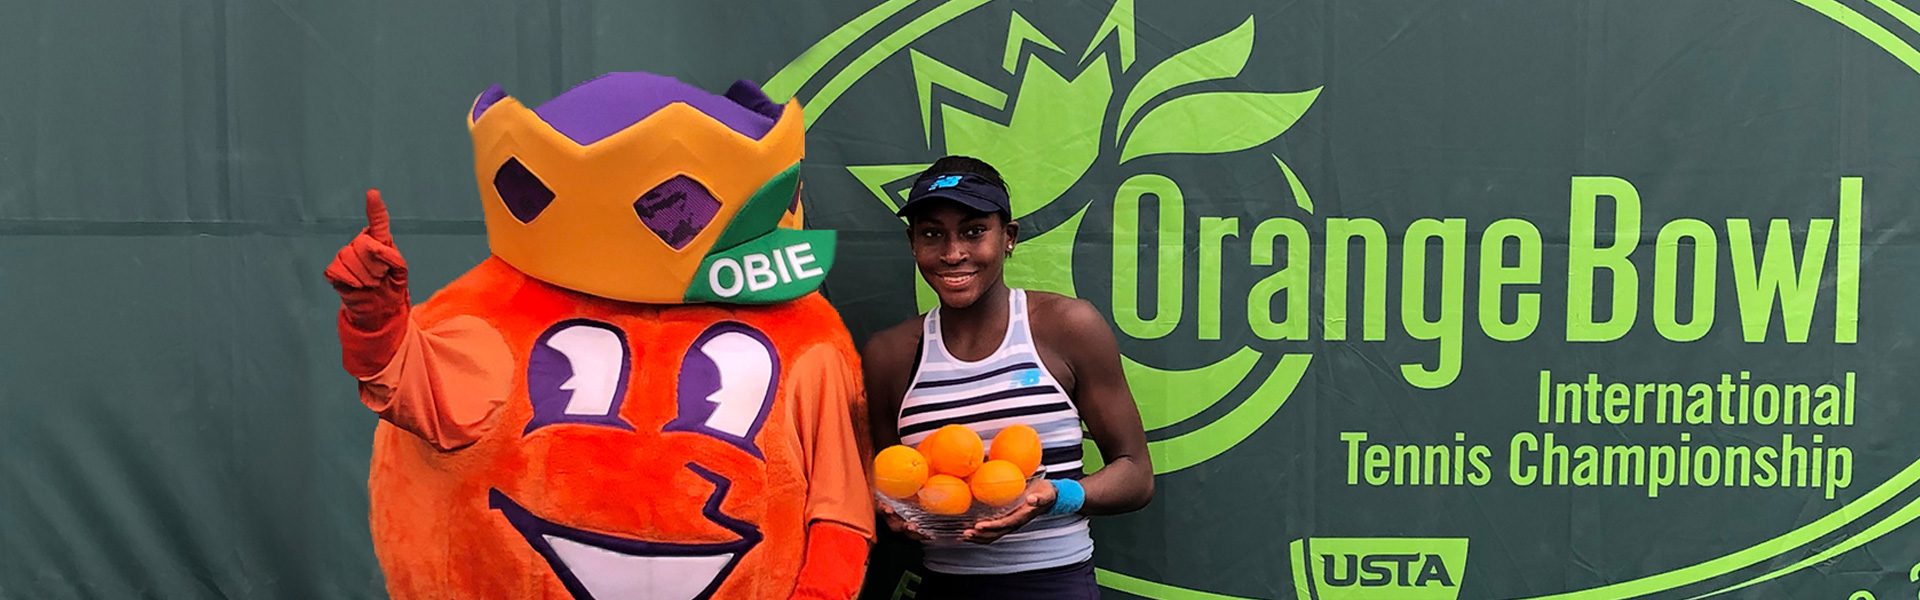 Orange Bowl International Tennis Championships